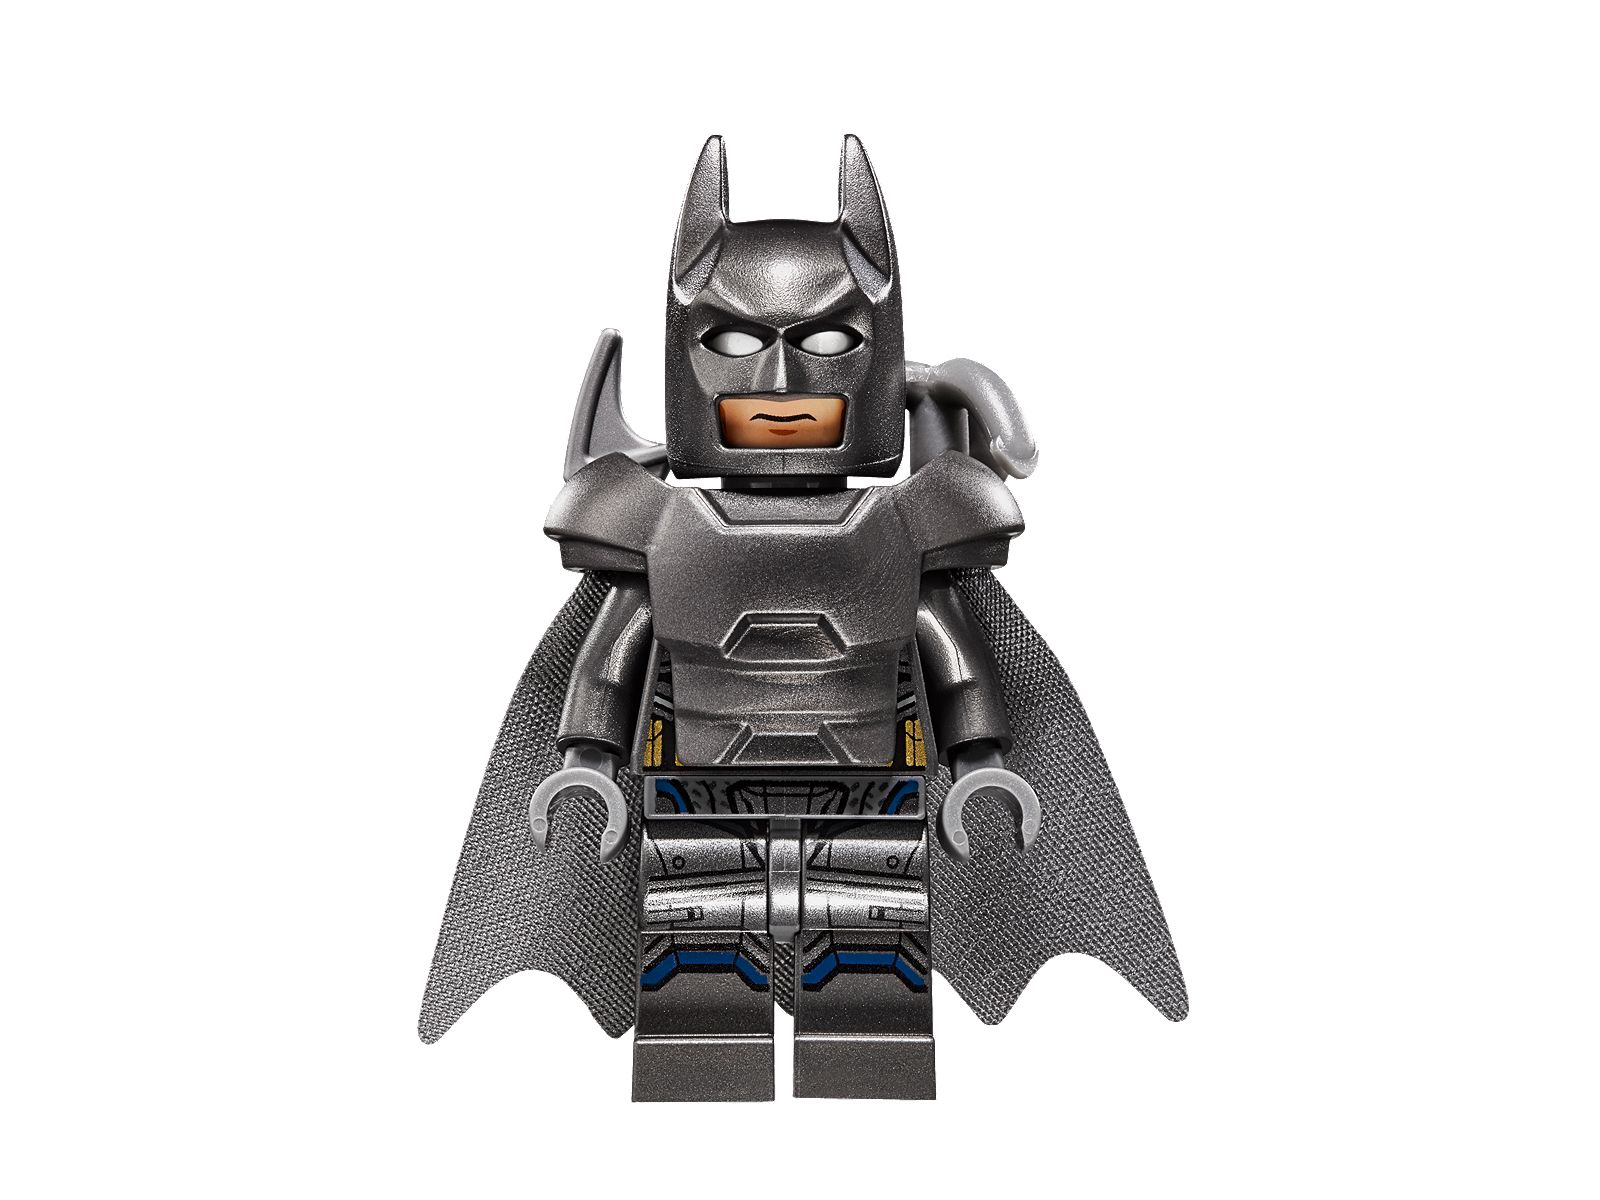 lego-web-site-posted-official-images-of-batman-v-superman-sets-76044